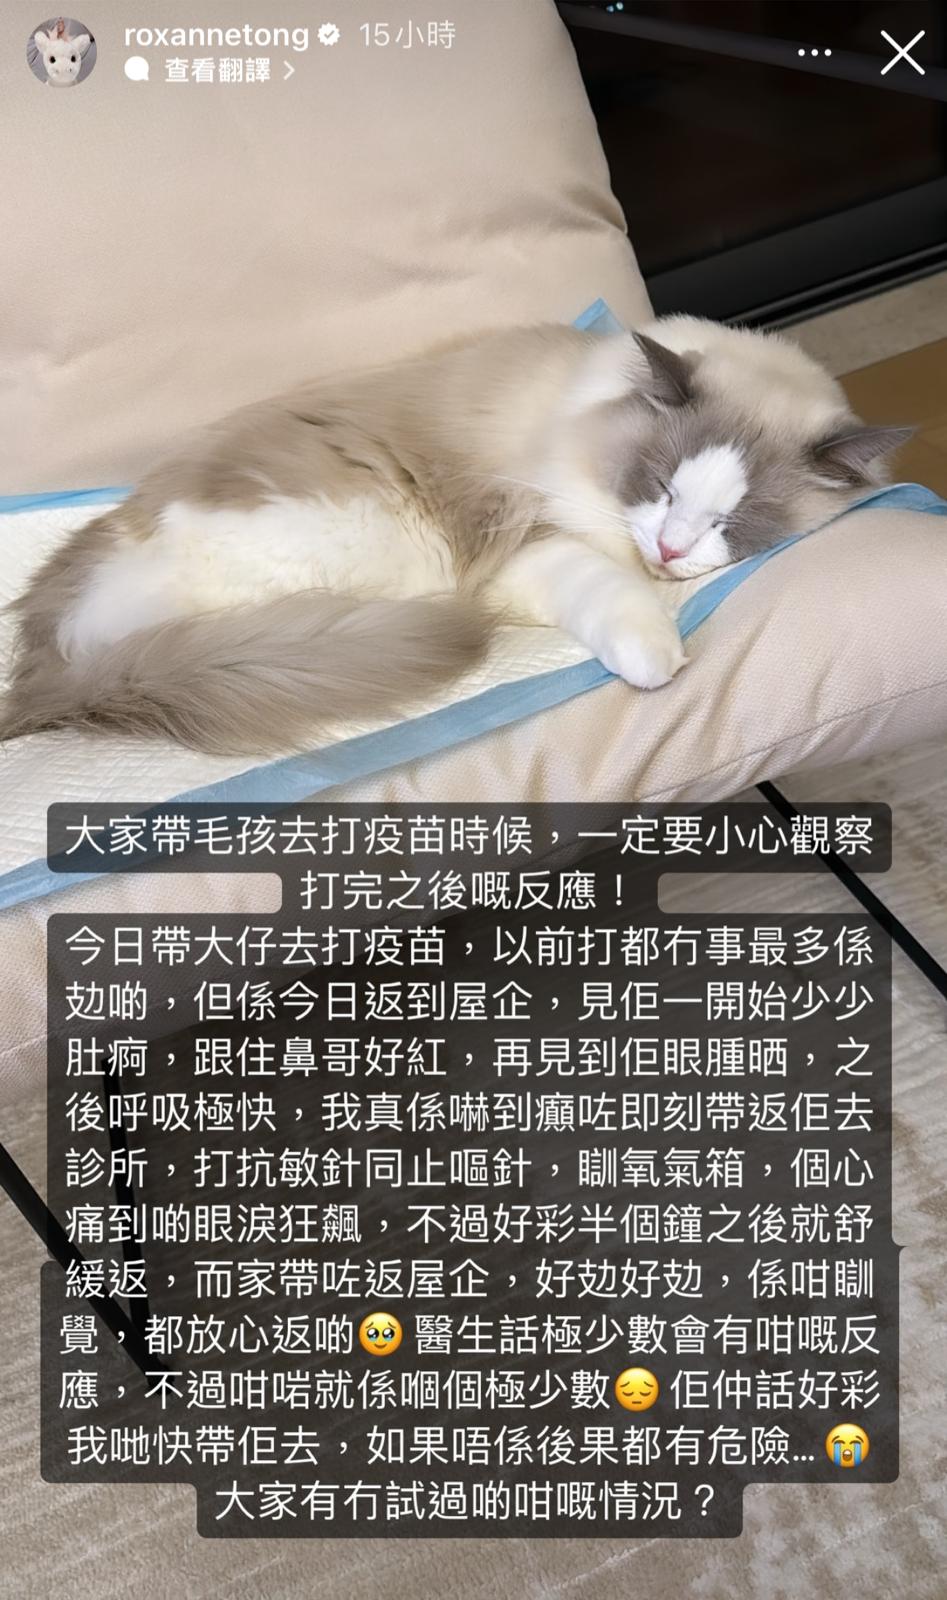 靓汤在IG限时动态贴出Tino睡在猫垫的照片。